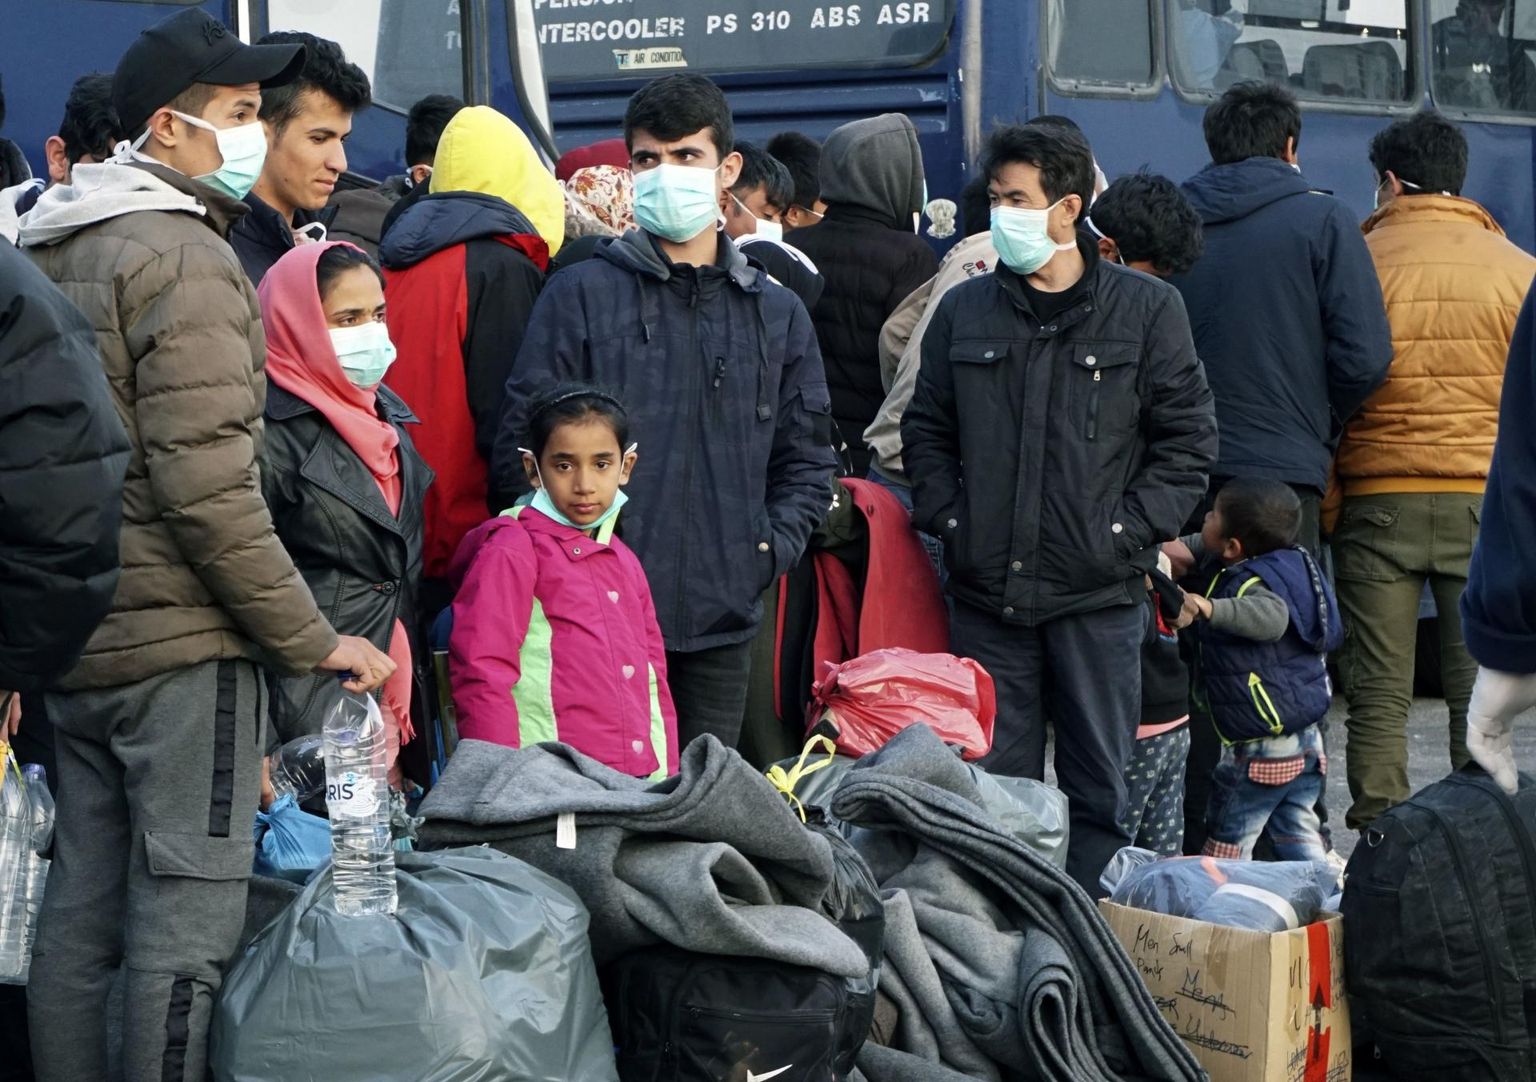 Türgist Lesbosele jõudnud migrandid ootamas praami, mis viiks nad edasi pagulaskeskusse Mandri-Kreekas.  FOTO: Vangelis Papantonis / AP / Scanpix